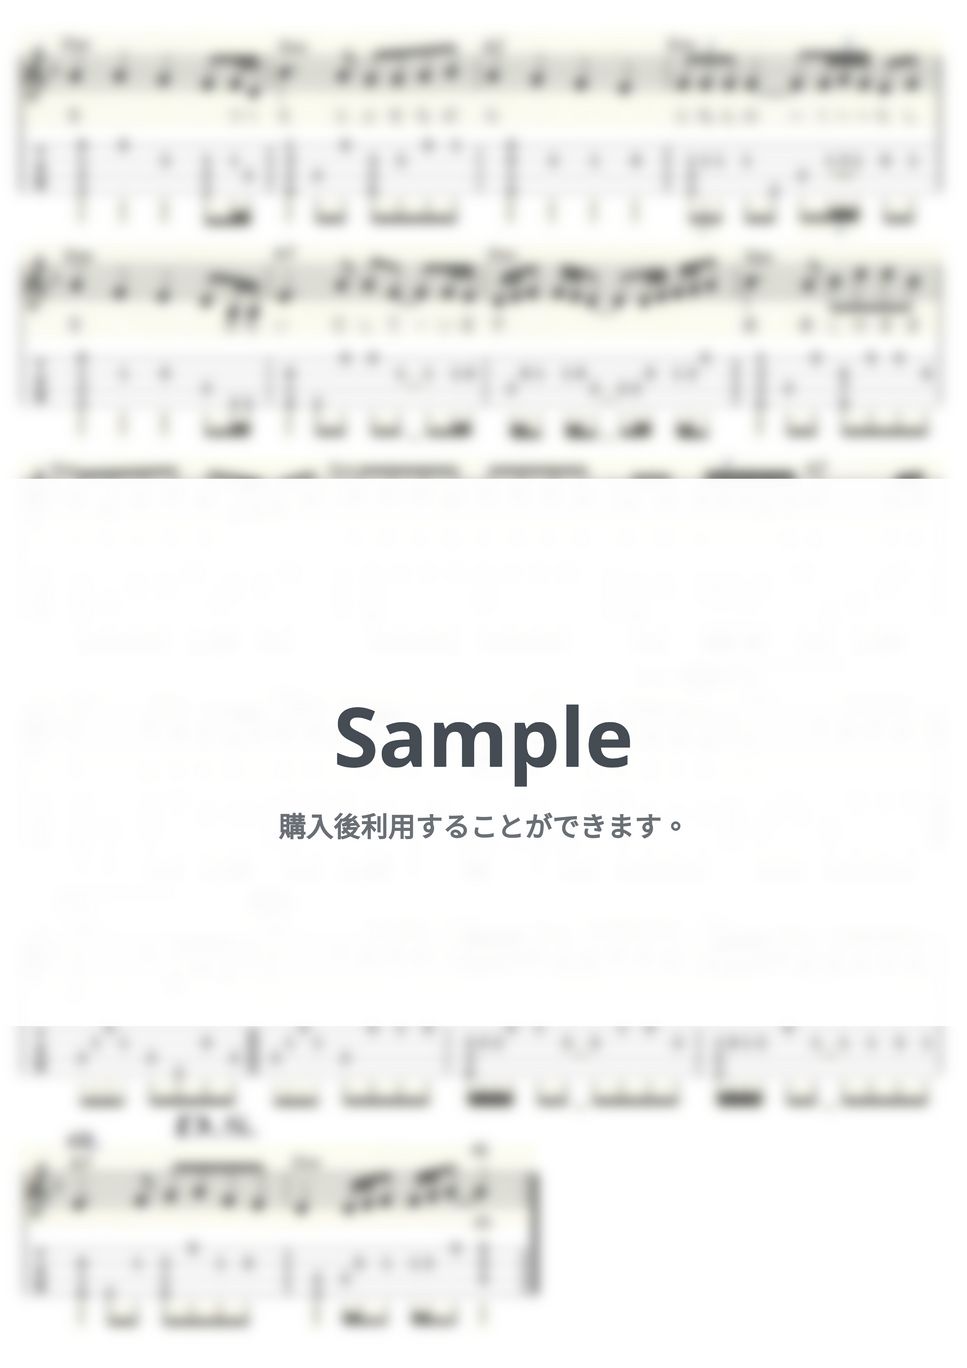 角川 博 - 許してください (ｳｸﾚﾚｿﾛ/Low-G/中級) by ukulelepapa